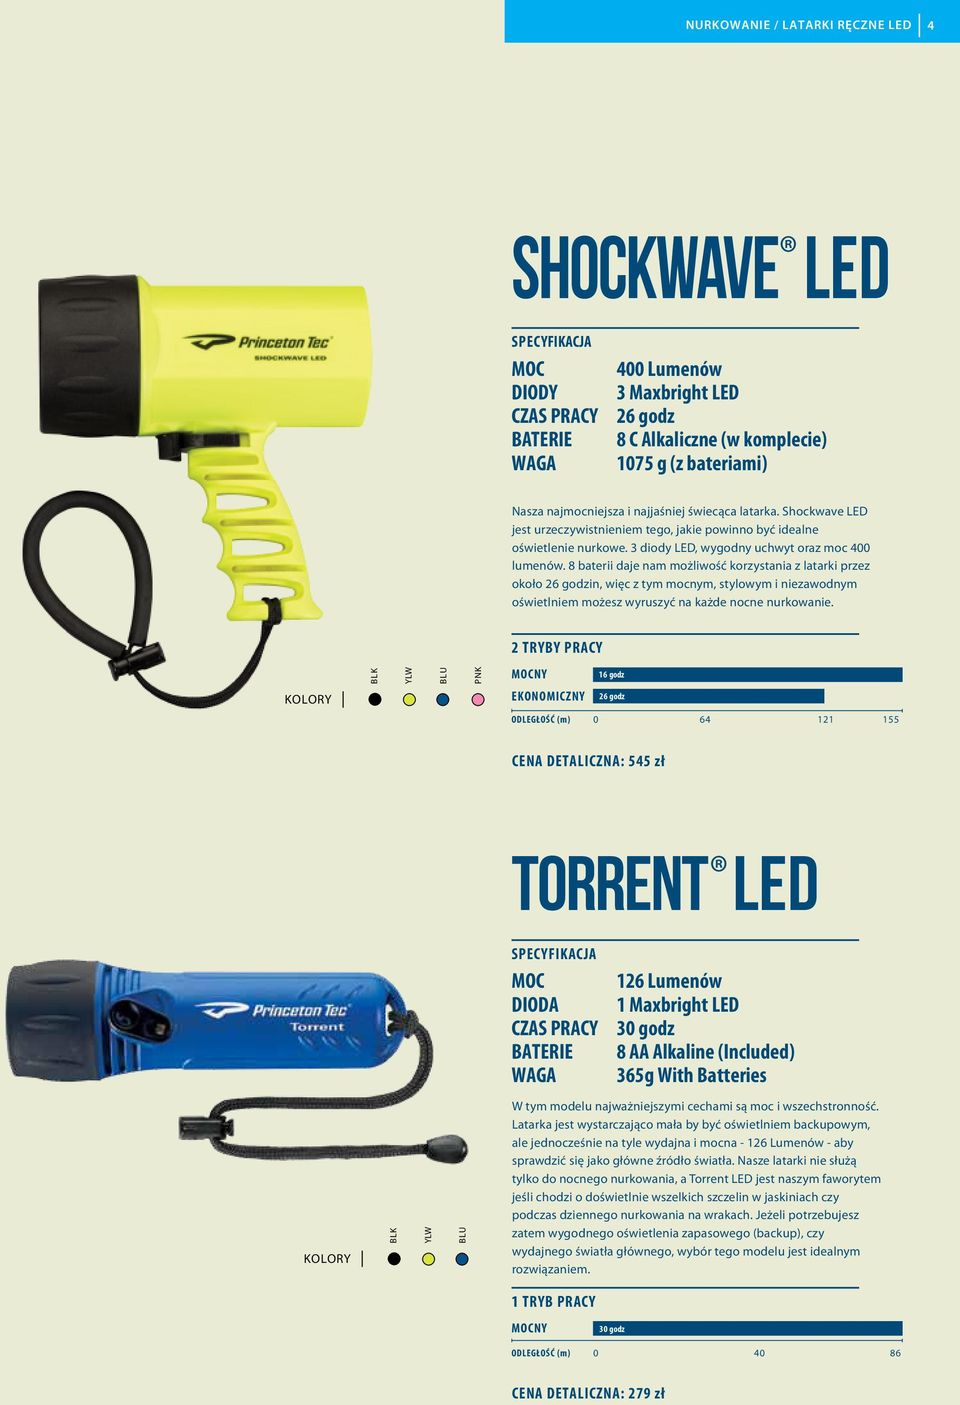 8 baterii daje nam możliwość korzystania z latarki przez około 26 godzin, więc z tym mocnym, stylowym i niezawodnym oświetlniem możesz wyruszyć na każde nocne nurkowanie.